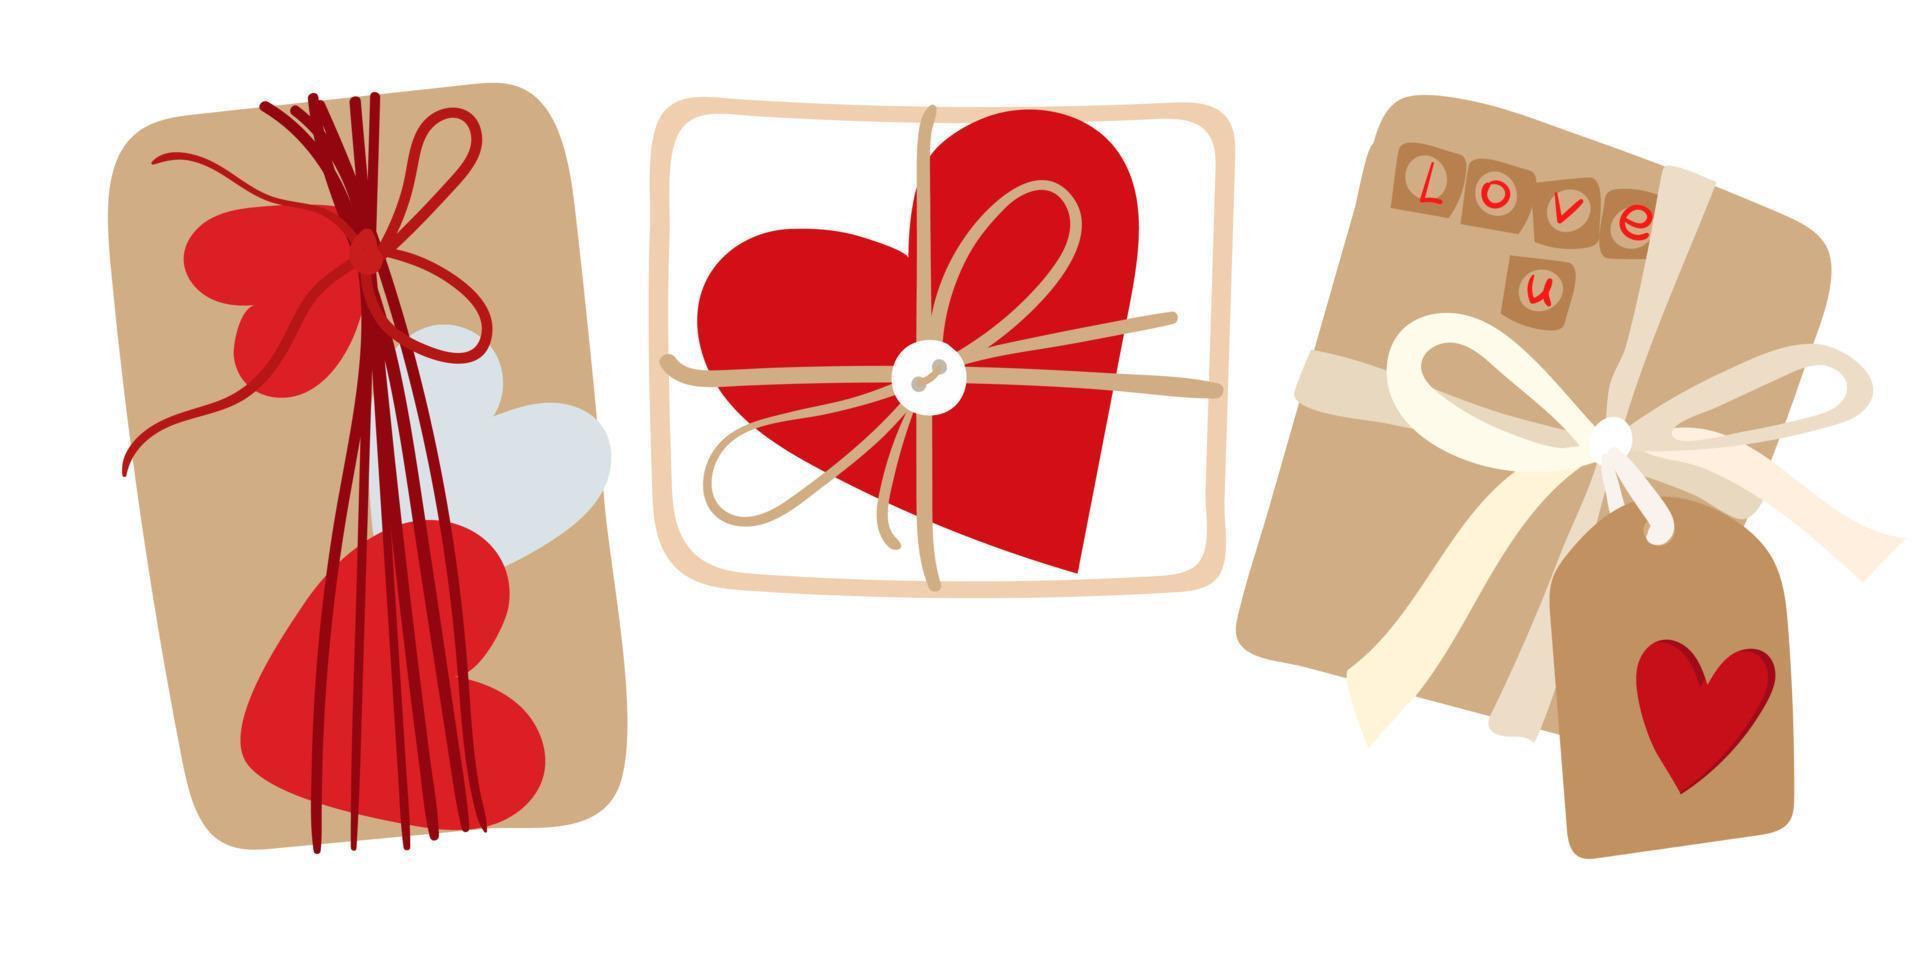 un conjunto de regalos. regalos de san valentín empaquetados simples sobre un fondo blanco. los regalos en la paleta de colores principal son rojo, blanco, beige. ilustración aislada para imprimir en postales y pancartas. vector